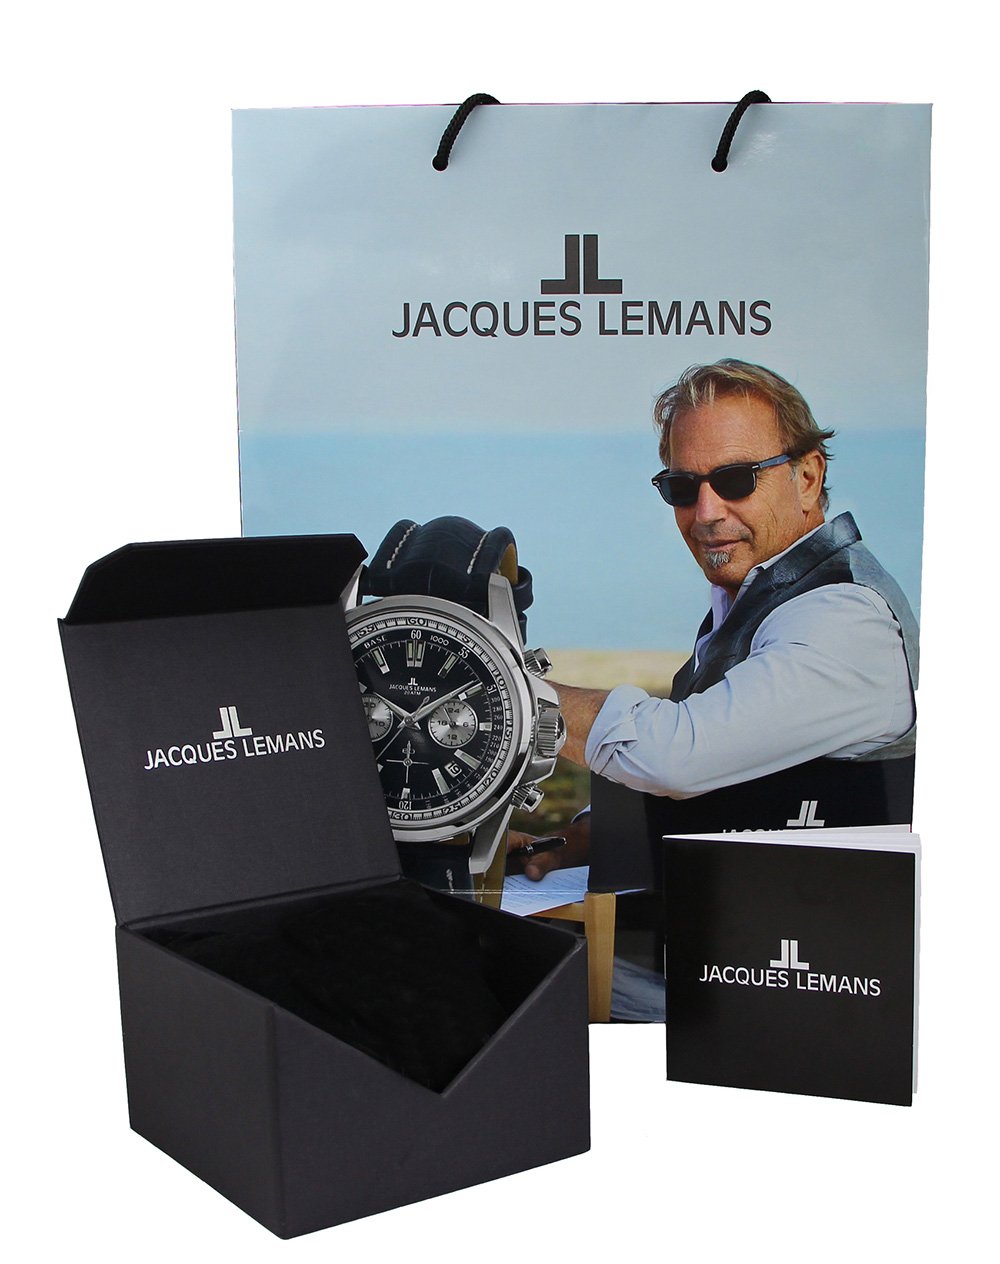 часы по в Jacques наручные купить 37050 1-2150E, цене руб. Lemans доставкой с